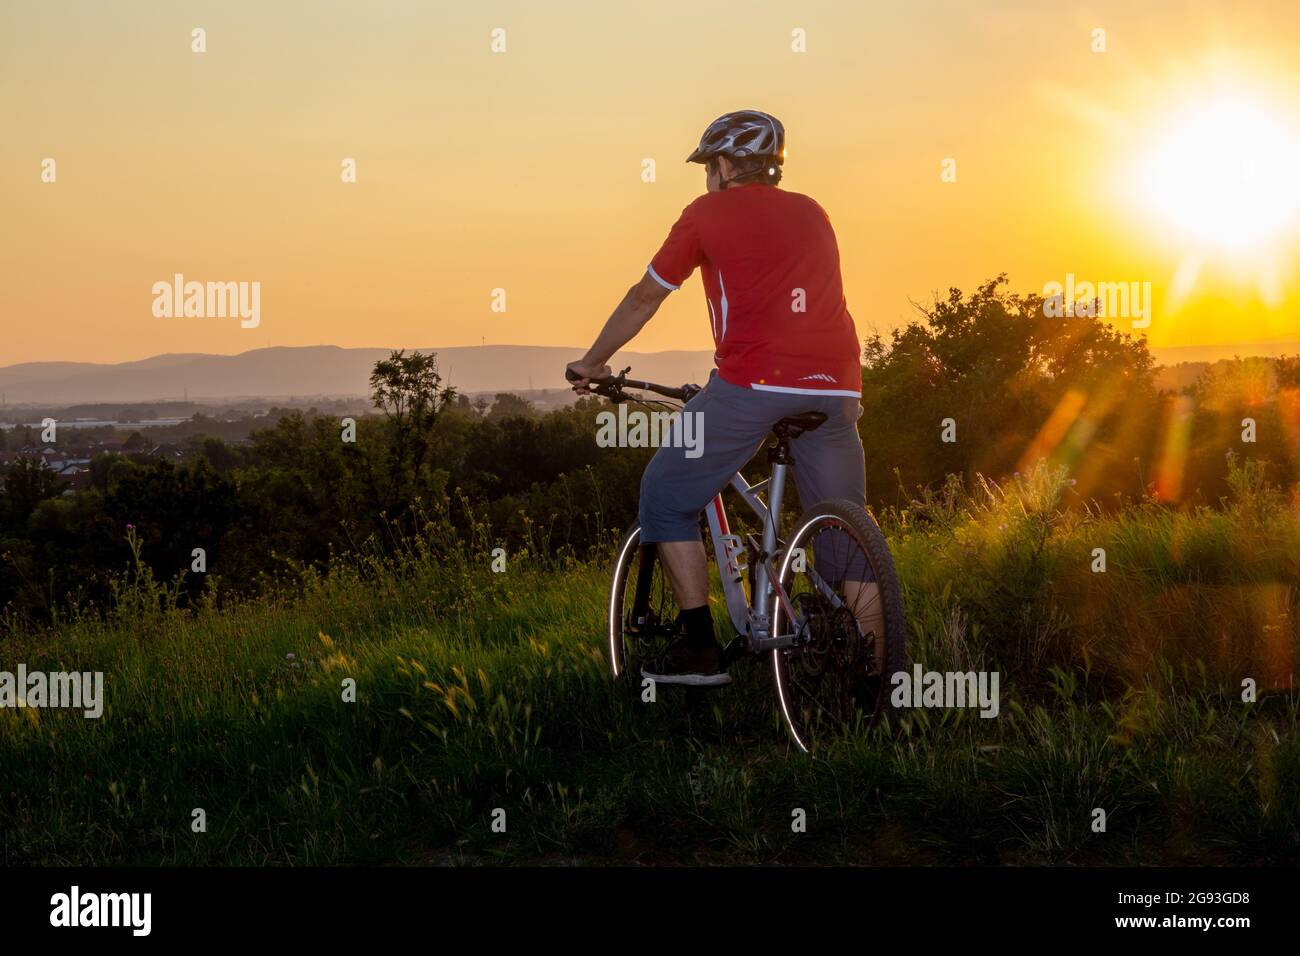 Immagine simbolica: Mountain bike godendo la vista al tramonto (modello rilasciato) Foto Stock